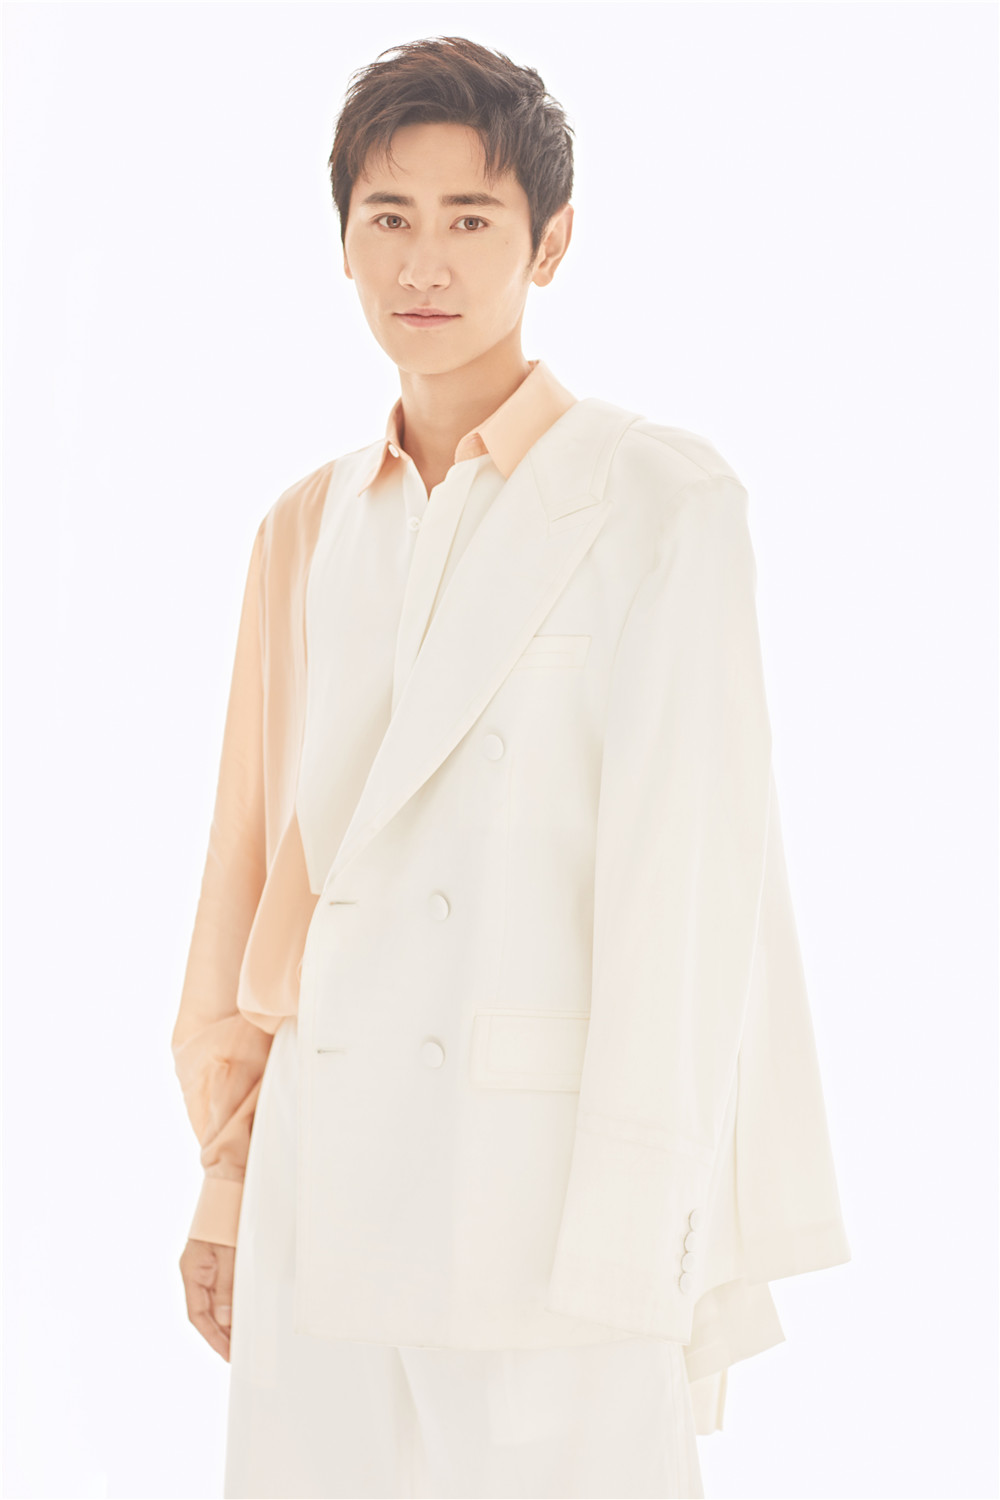 360娱乐1/5演员李雨轩最新早秋时尚写真上线,图中他身穿浅橘色纱质